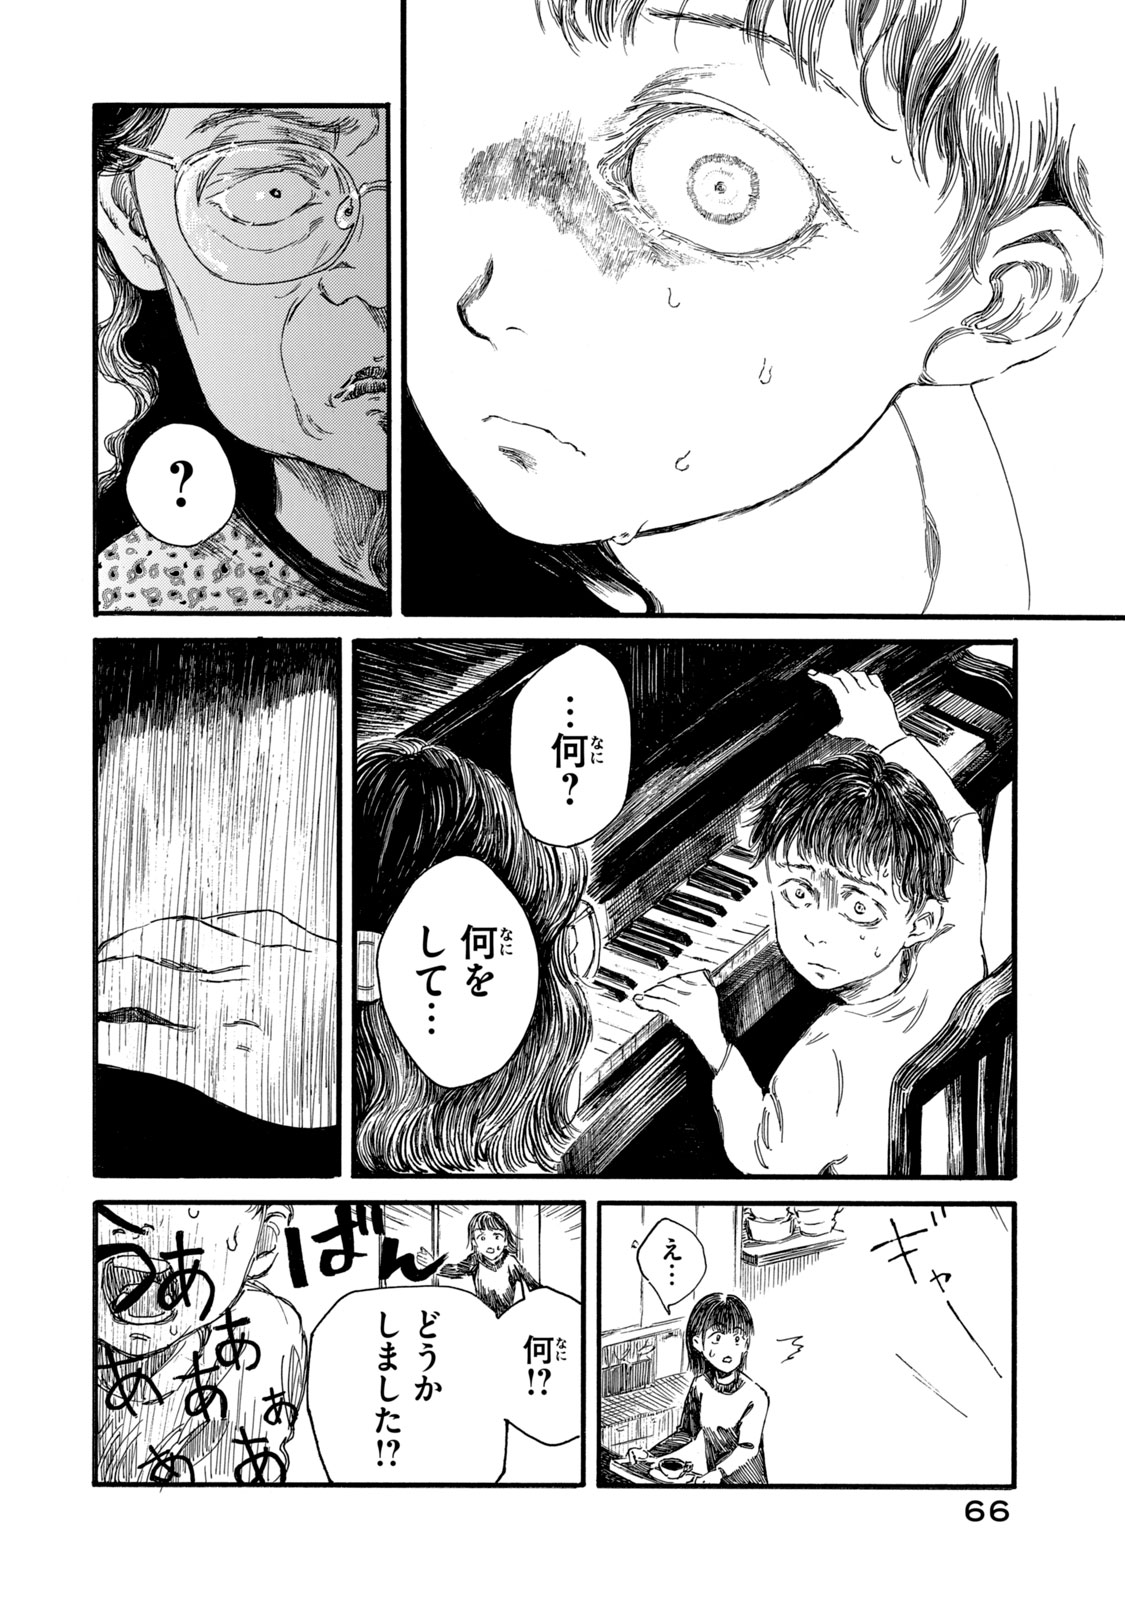 Watashi no Hara no Naka no Bakemono - Chapter 11 - Page 4